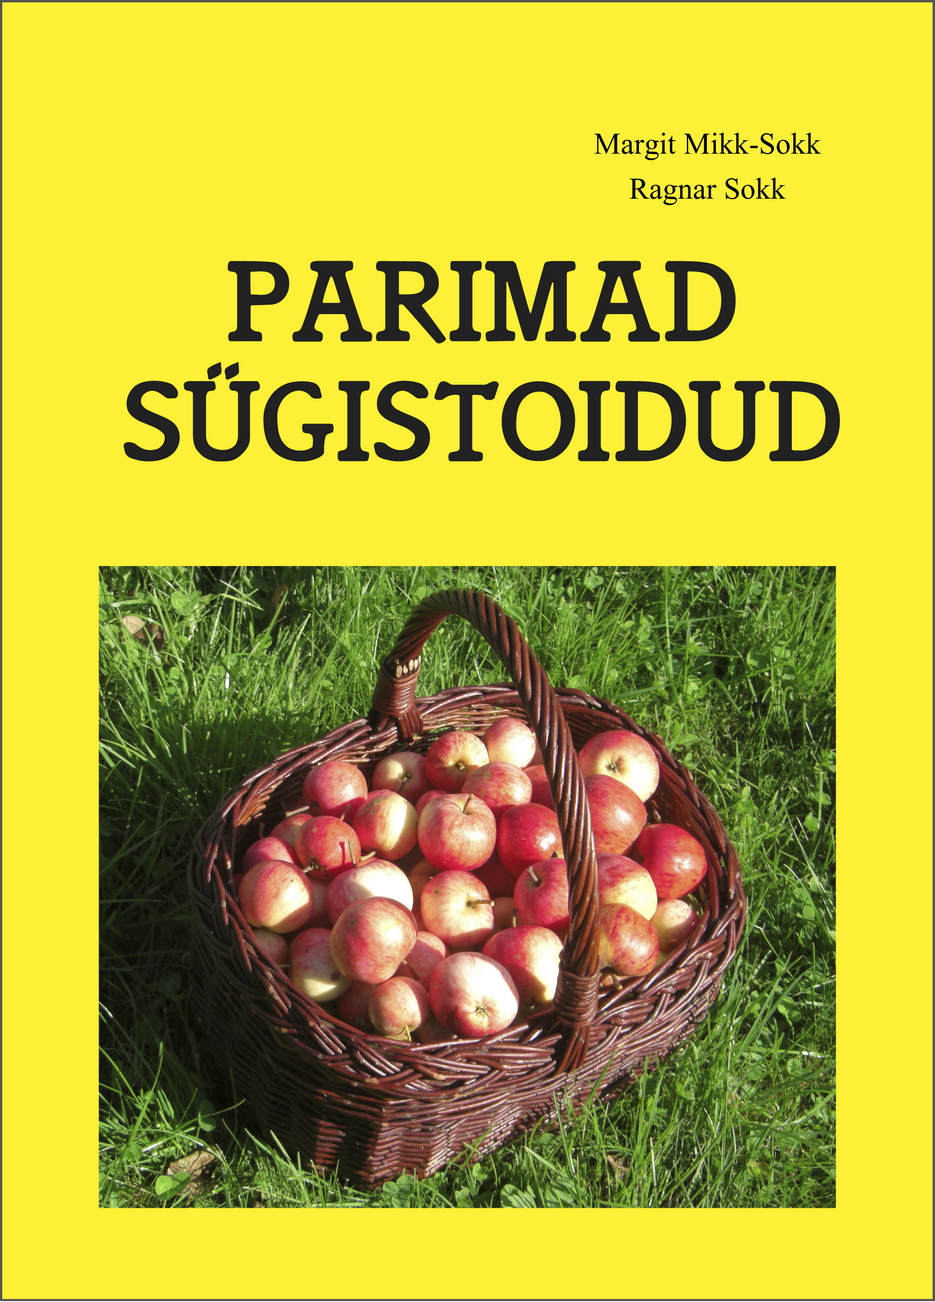 Книга Parimad sügistoidud из серии , созданная Ragnar Sokk, Margit Mikk-Sokk, может относится к жанру Зарубежная прикладная и научно-популярная литература, Кулинария. Стоимость электронной книги Parimad sügistoidud с идентификатором 27615374 составляет 352.54 руб.